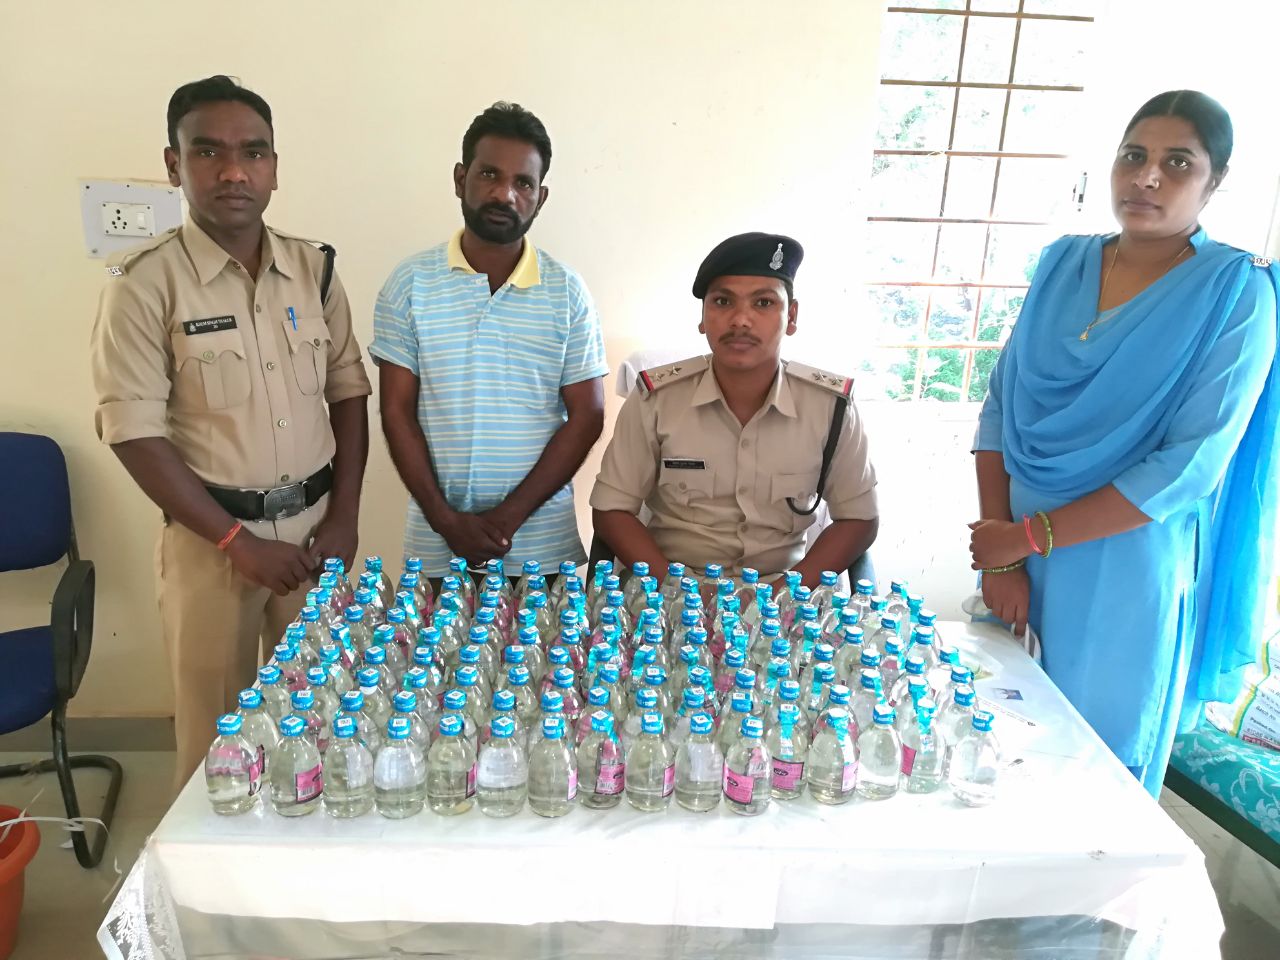 अवैध शराब बिक्री करते आरोपी गिरफ्तार, 160 बोतल देशी प्लेन शराब समेत नगद राशि जब्त, गांधी जयंती के दौरान अधिक लाभार्जन हेतु अवैध रुप से बेची जा रही थी शराब